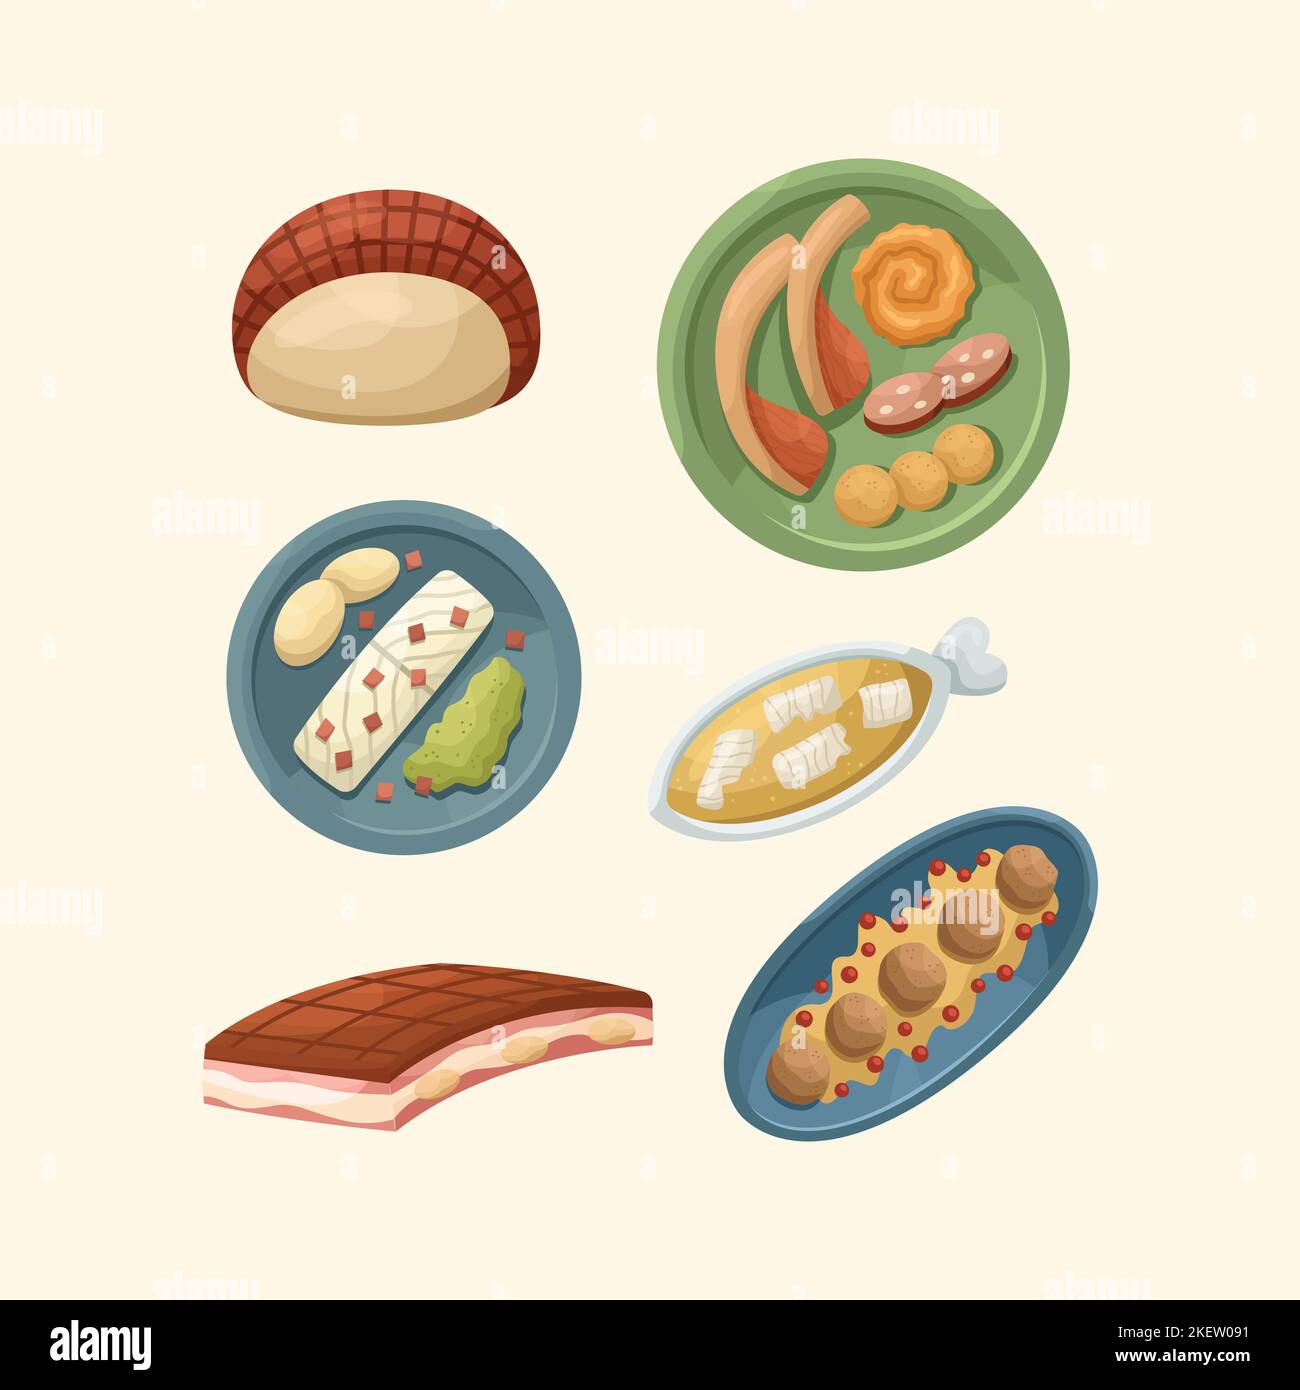 Vektor-Set mit Illustrationen von skandinavischen Gerichten. Küche für Neujahr und Weihnachten. Flacher Style. Stock Vektor